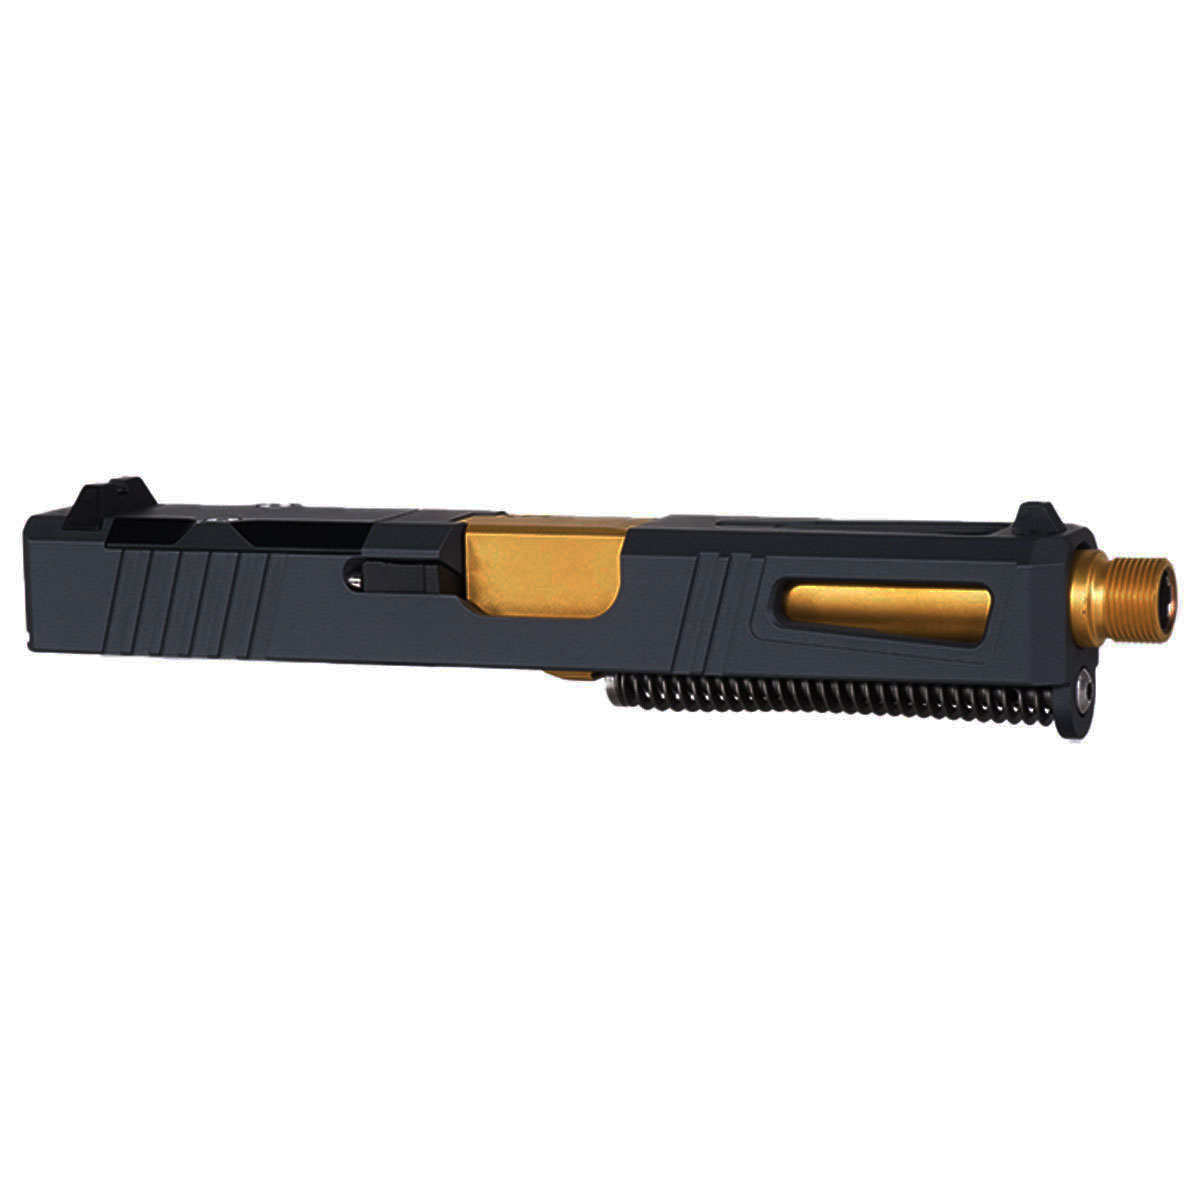 DDS 'Hermes' 9mm Complete Slide Kit - Glock 19 Gen 1-3 Compatible